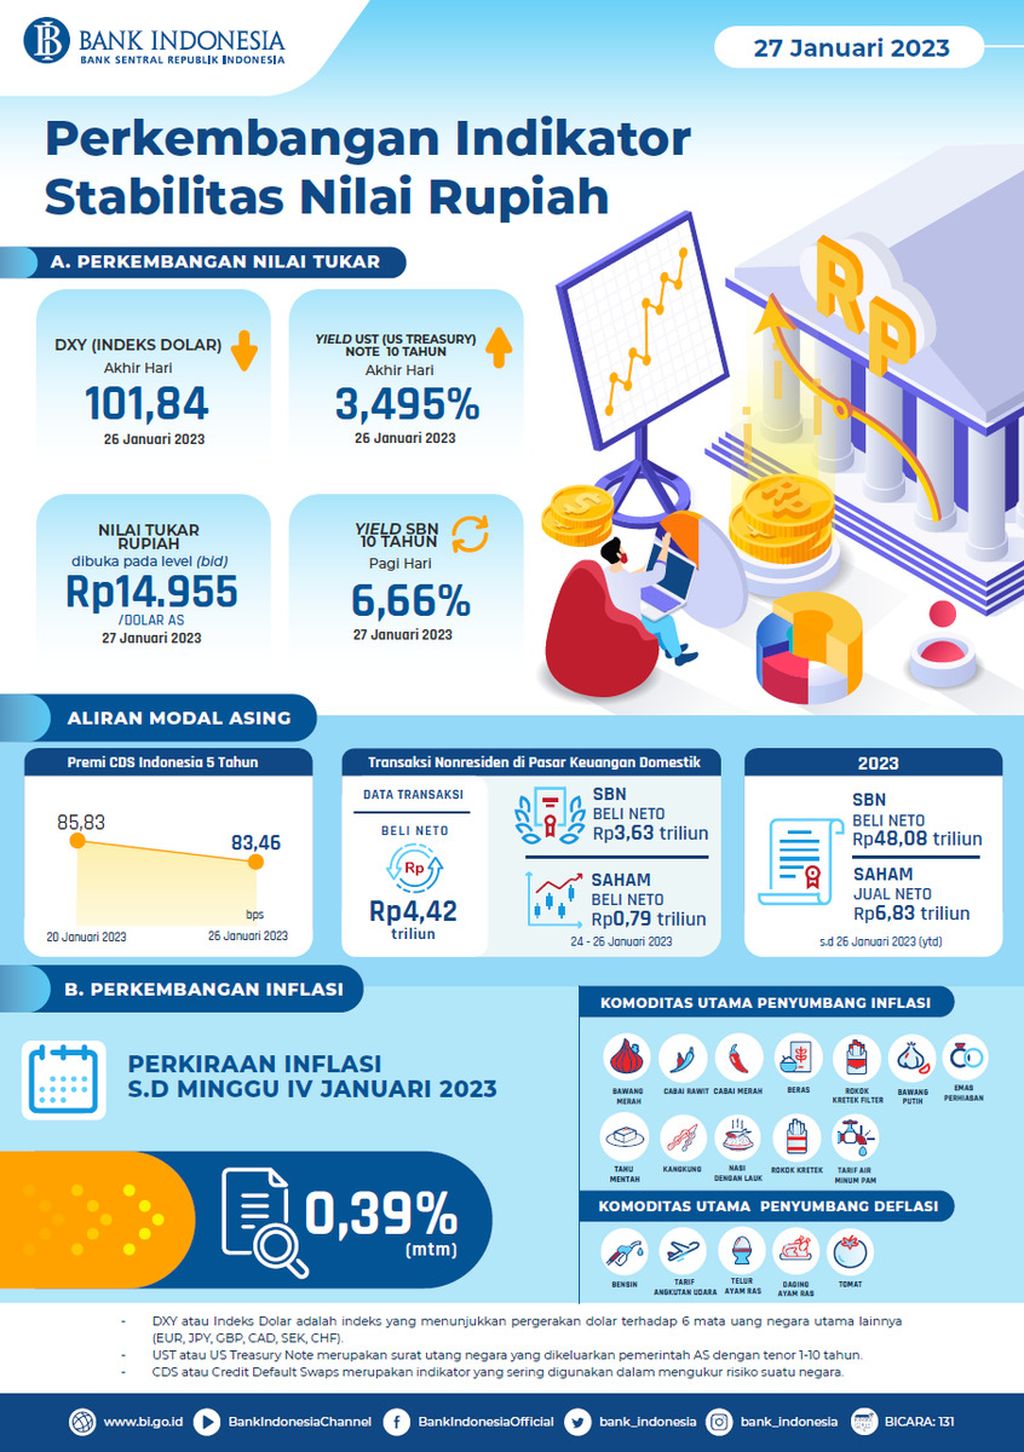 Perkembangan Indikator Stabilitas Nilai Rupiah per 27 Januari 2023. Sumber: Bank Indonesia